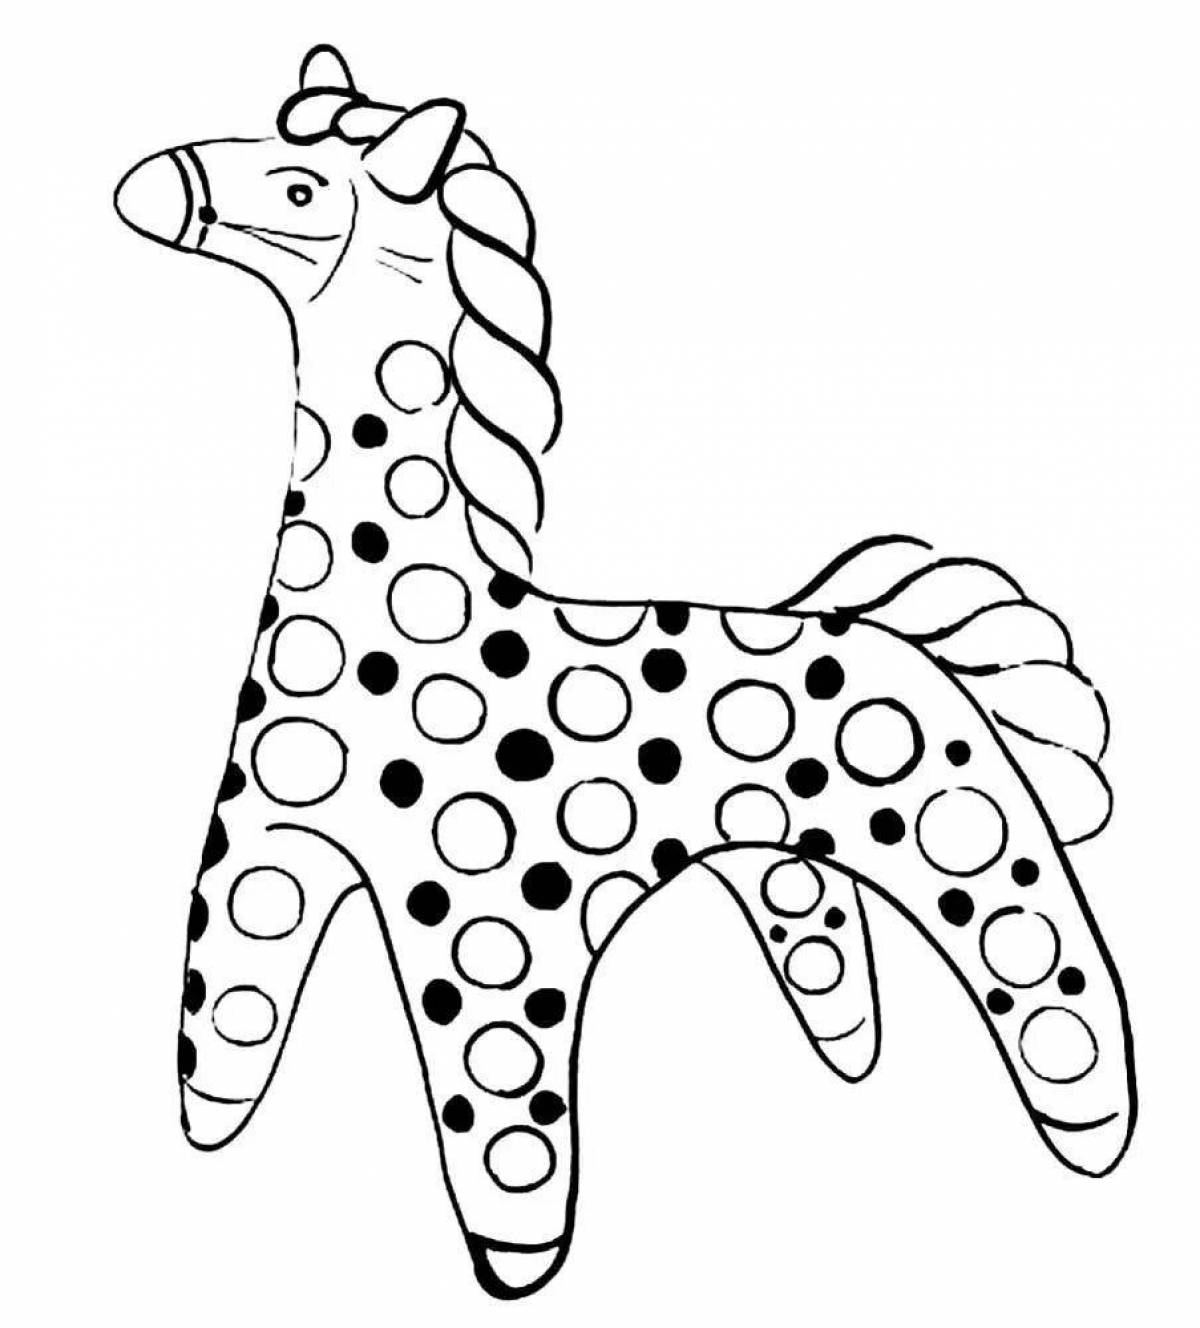 Великолепная филимонская лошадь-раскраска для малышей